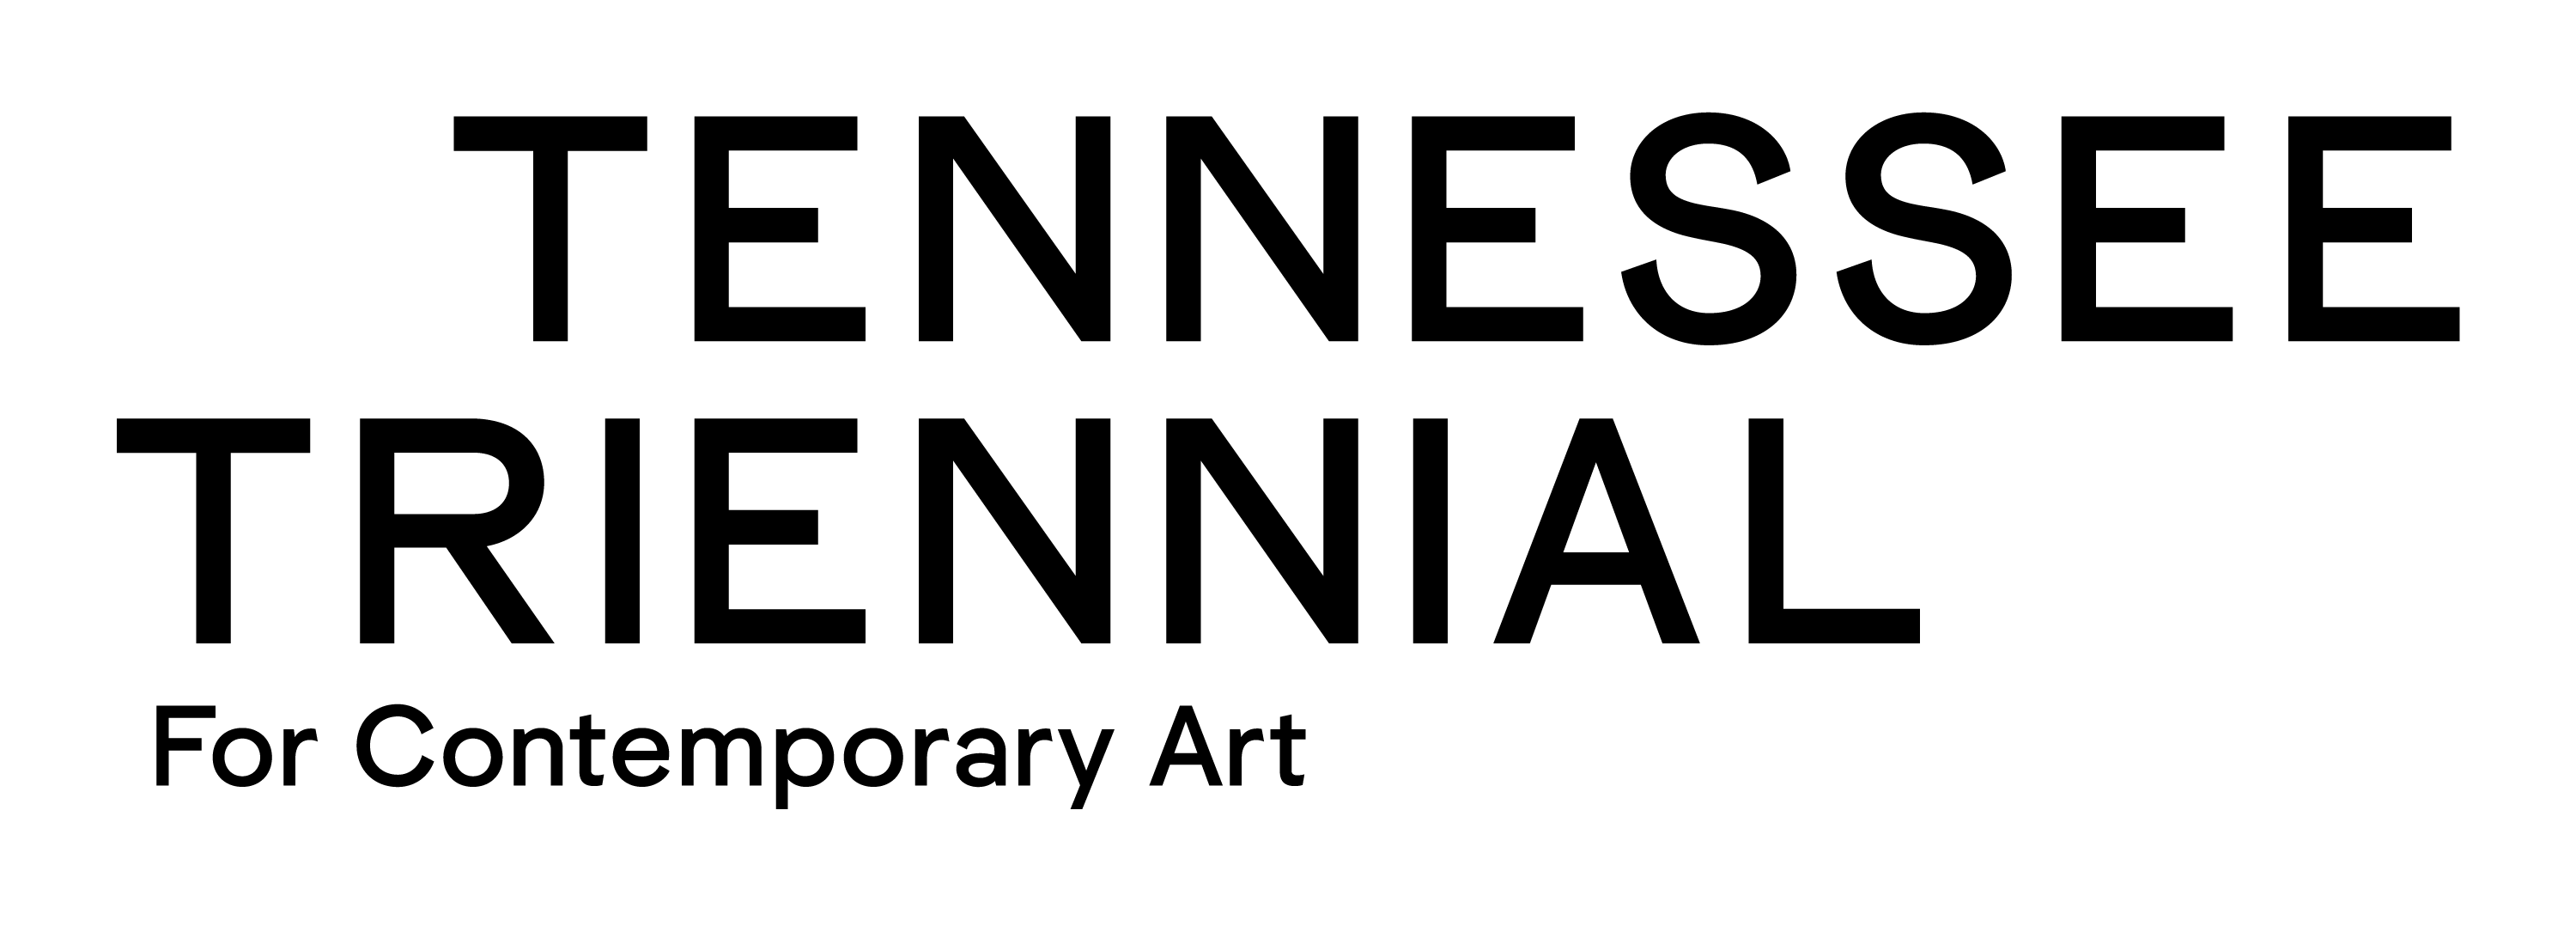 Tri-Star Arts logo